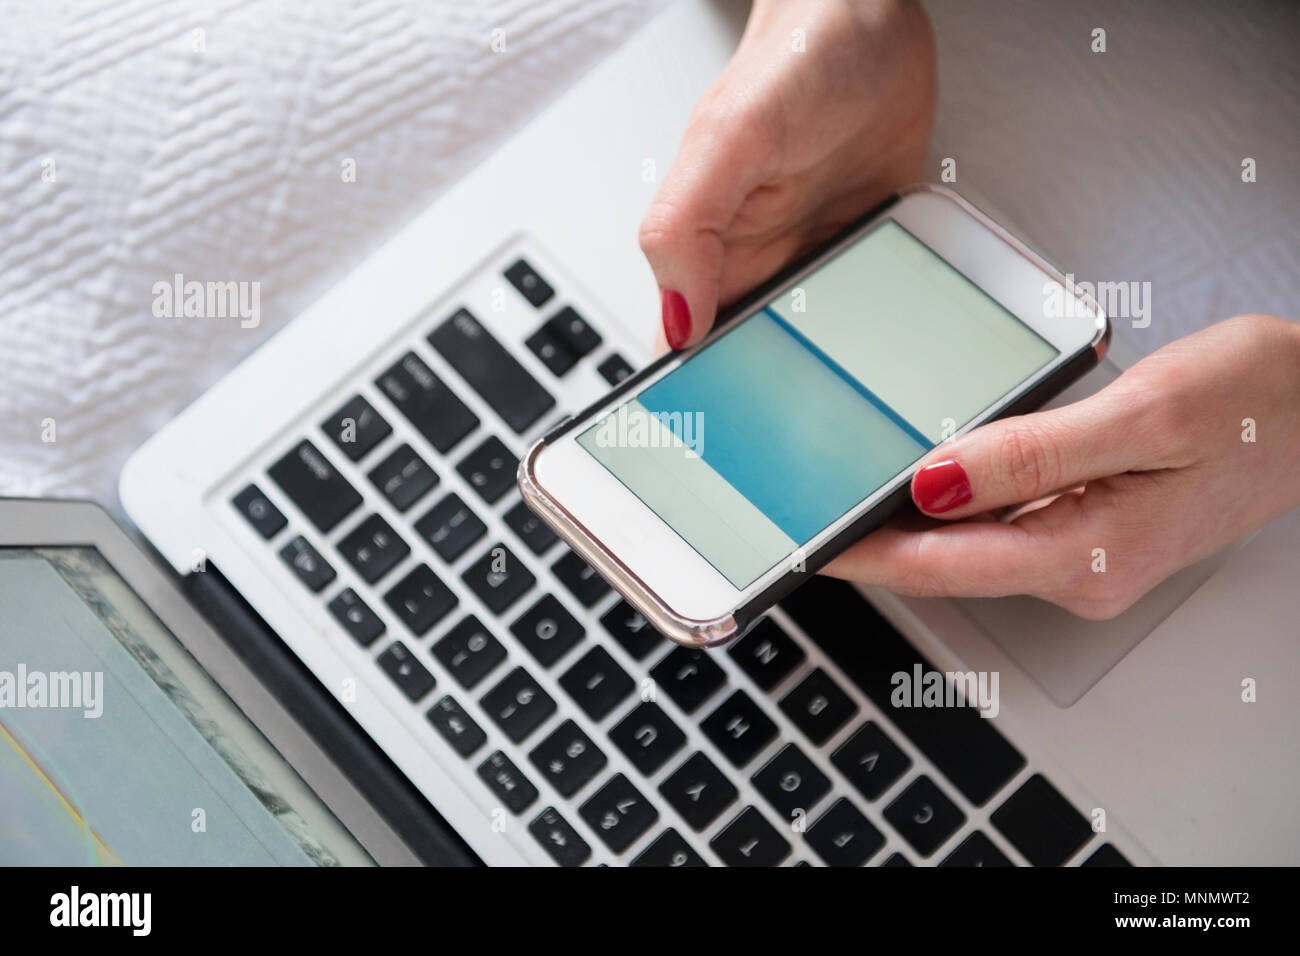 Frau mit Smartphone und Laptop im Bett Stockfoto